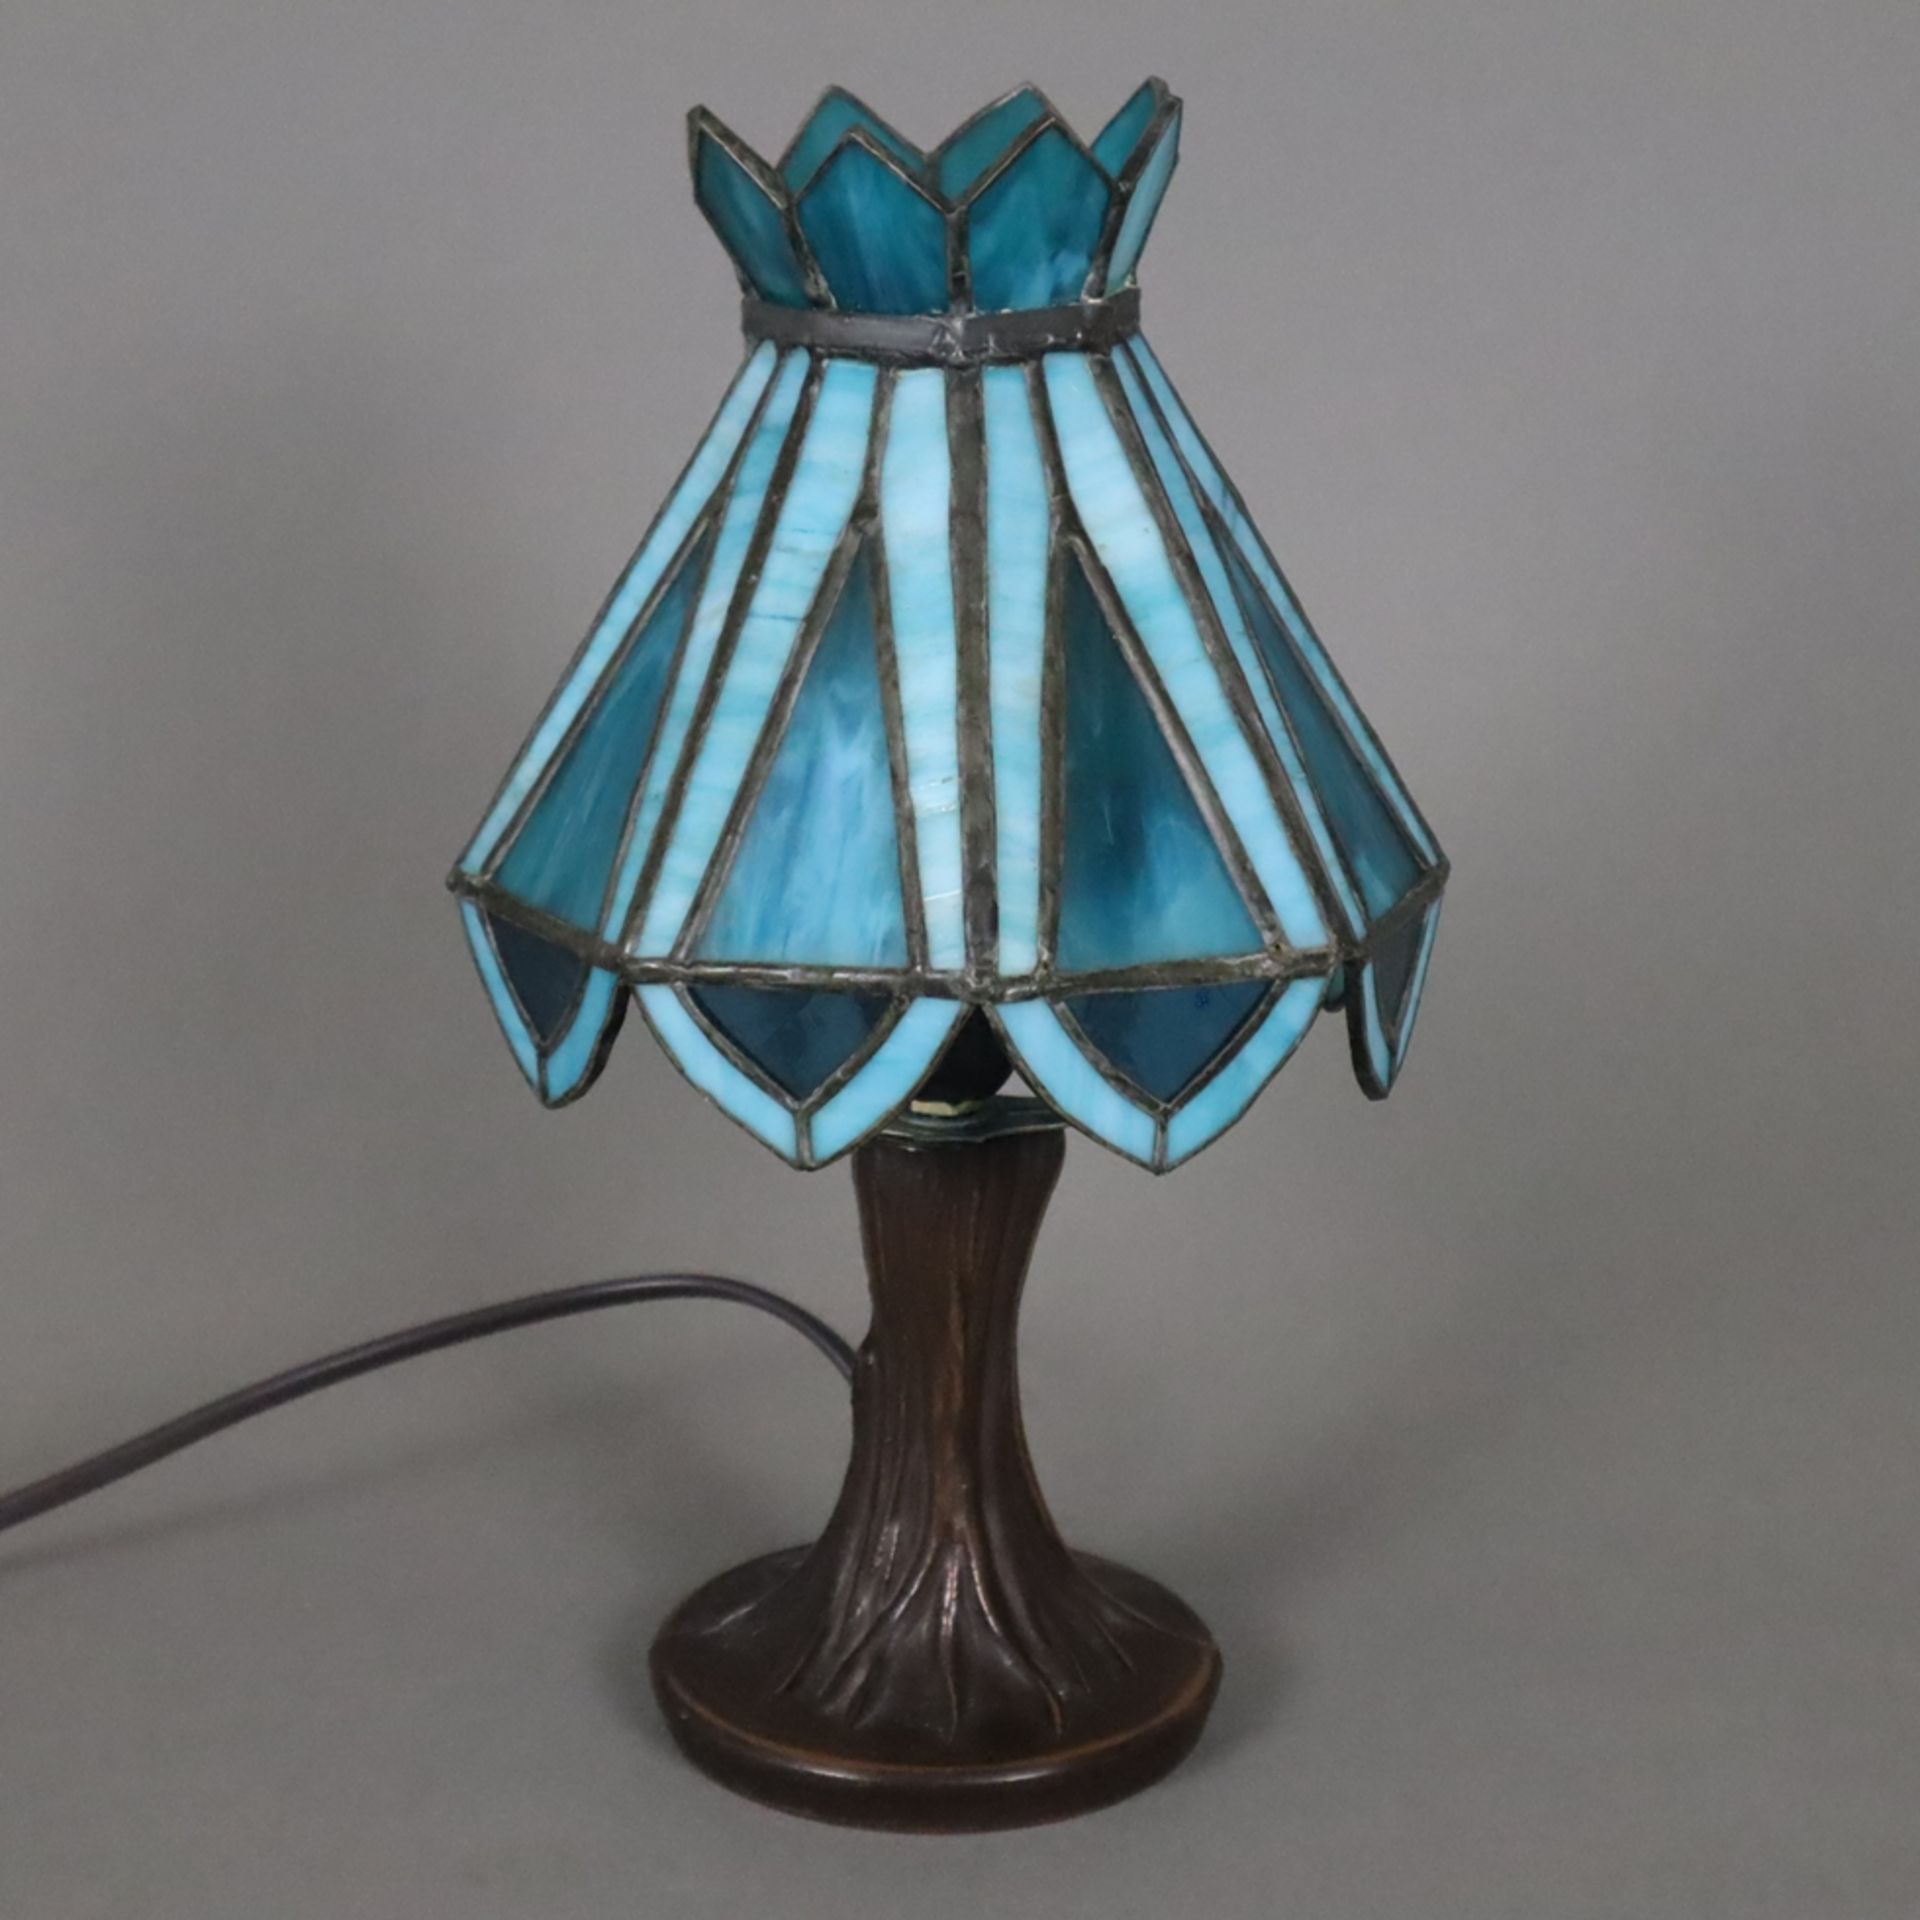 Kleine Tischlampe im Tiffany-Stil - 20.Jh., bronzierter Metallstand in Baumstammoptik, Schirm aus t